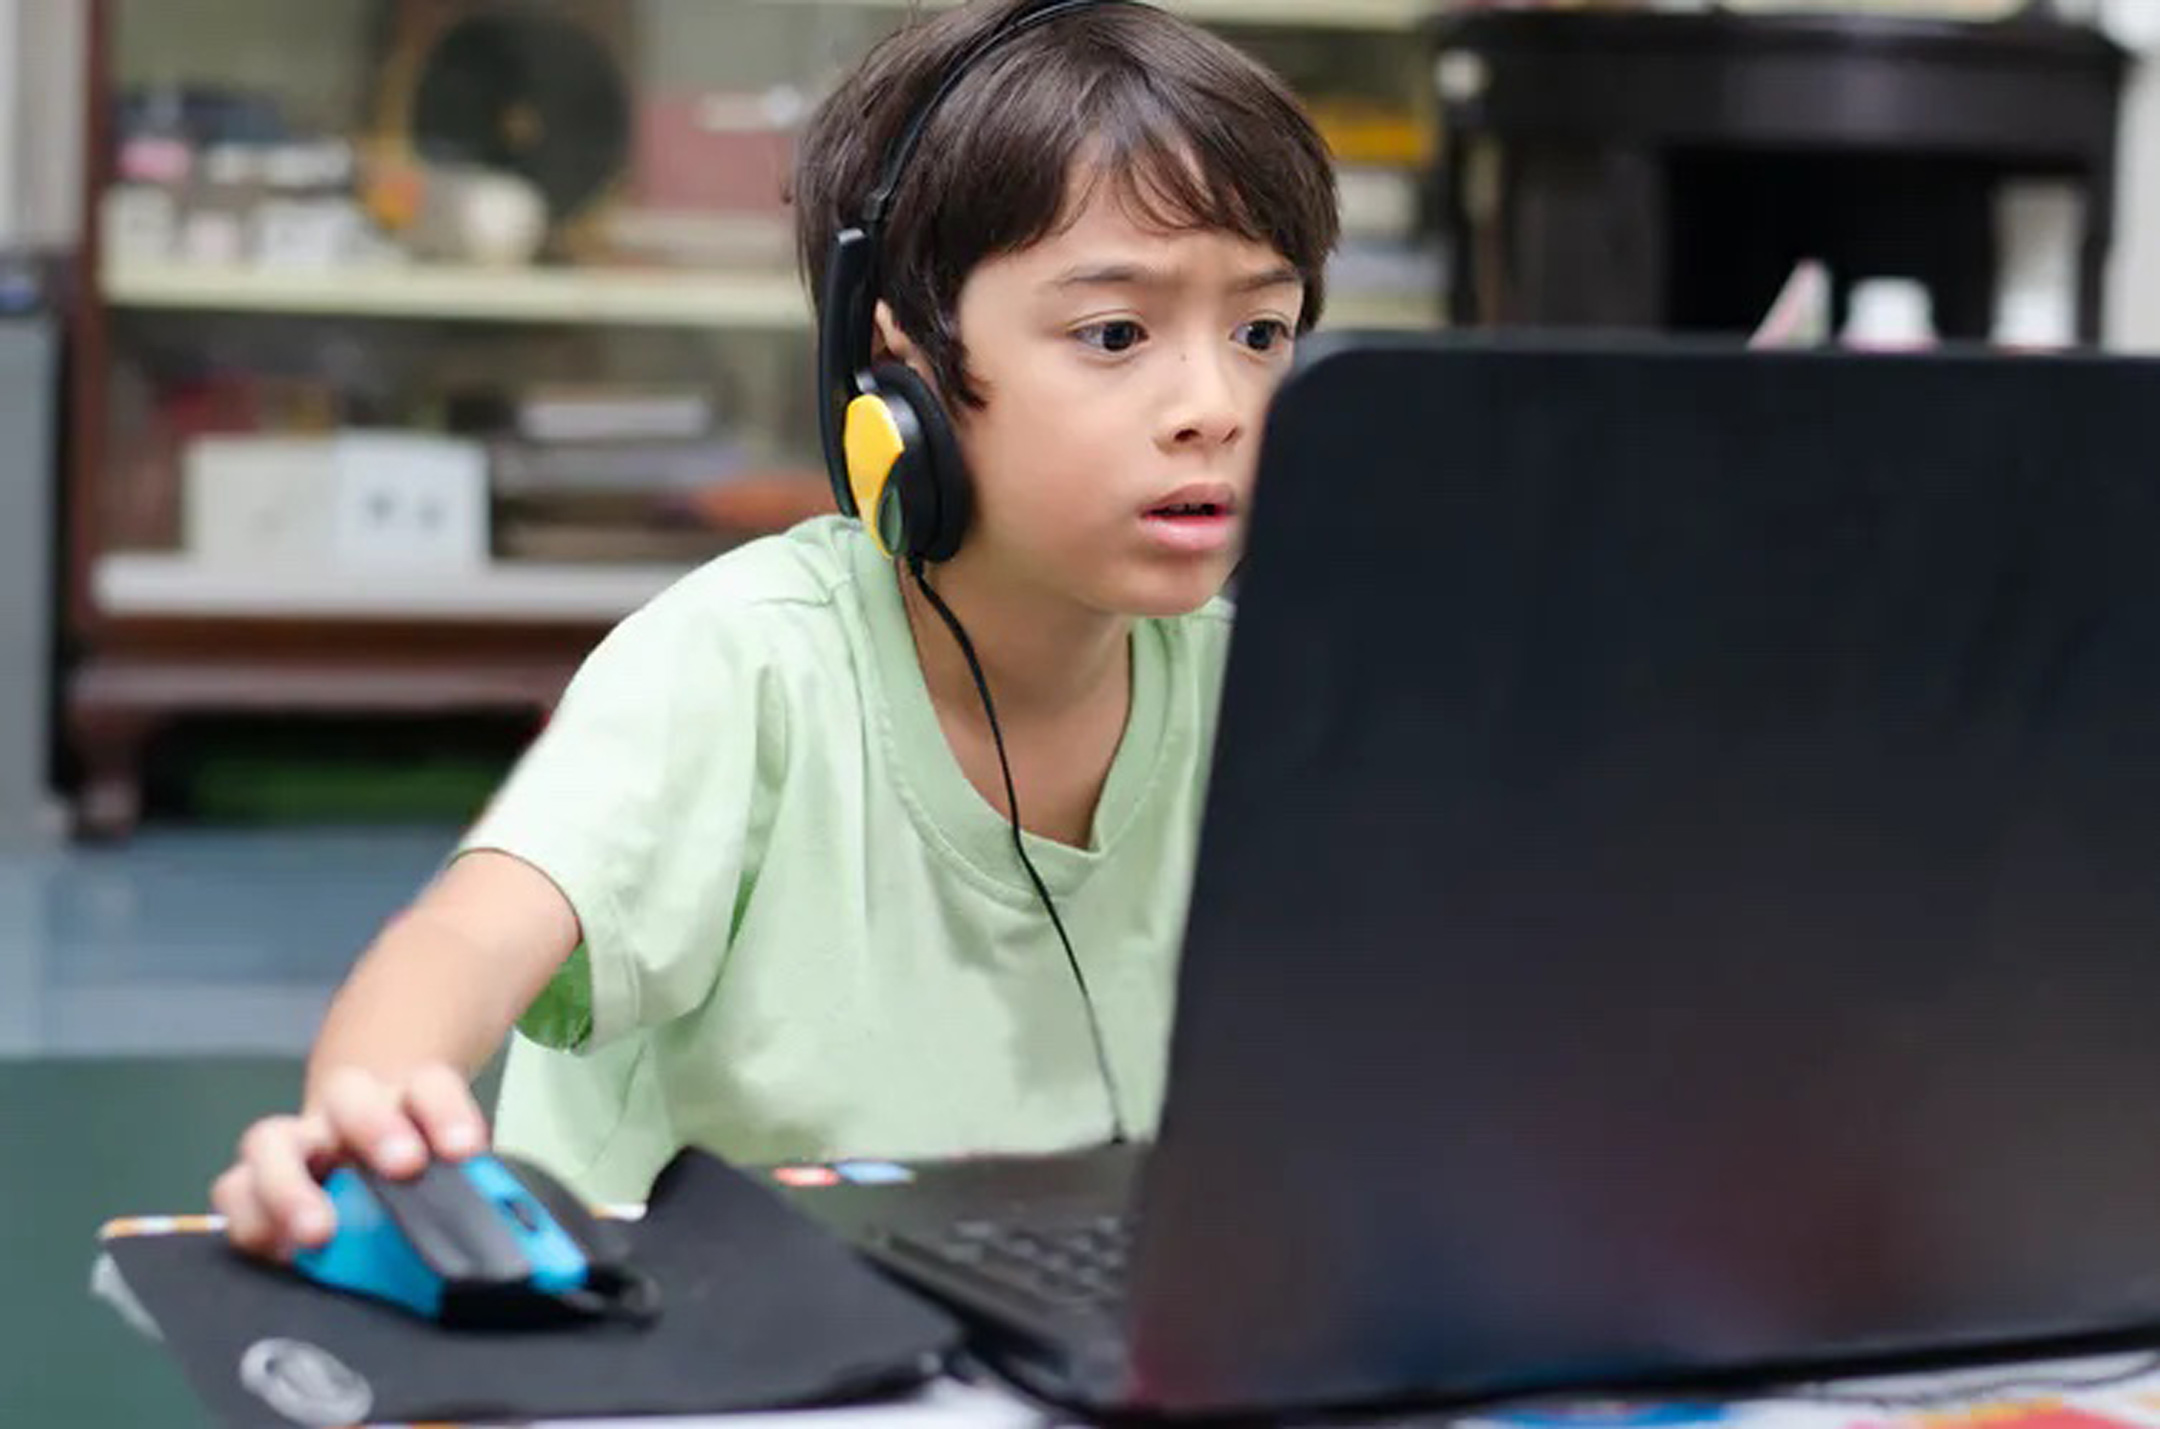 Играющий в компьютерные игры. Дети играющие в компьютерные игры. Ребенок играющий в компьютерную игру. Ребенокиграющив компьютер. Подросток играющий в компьютер.